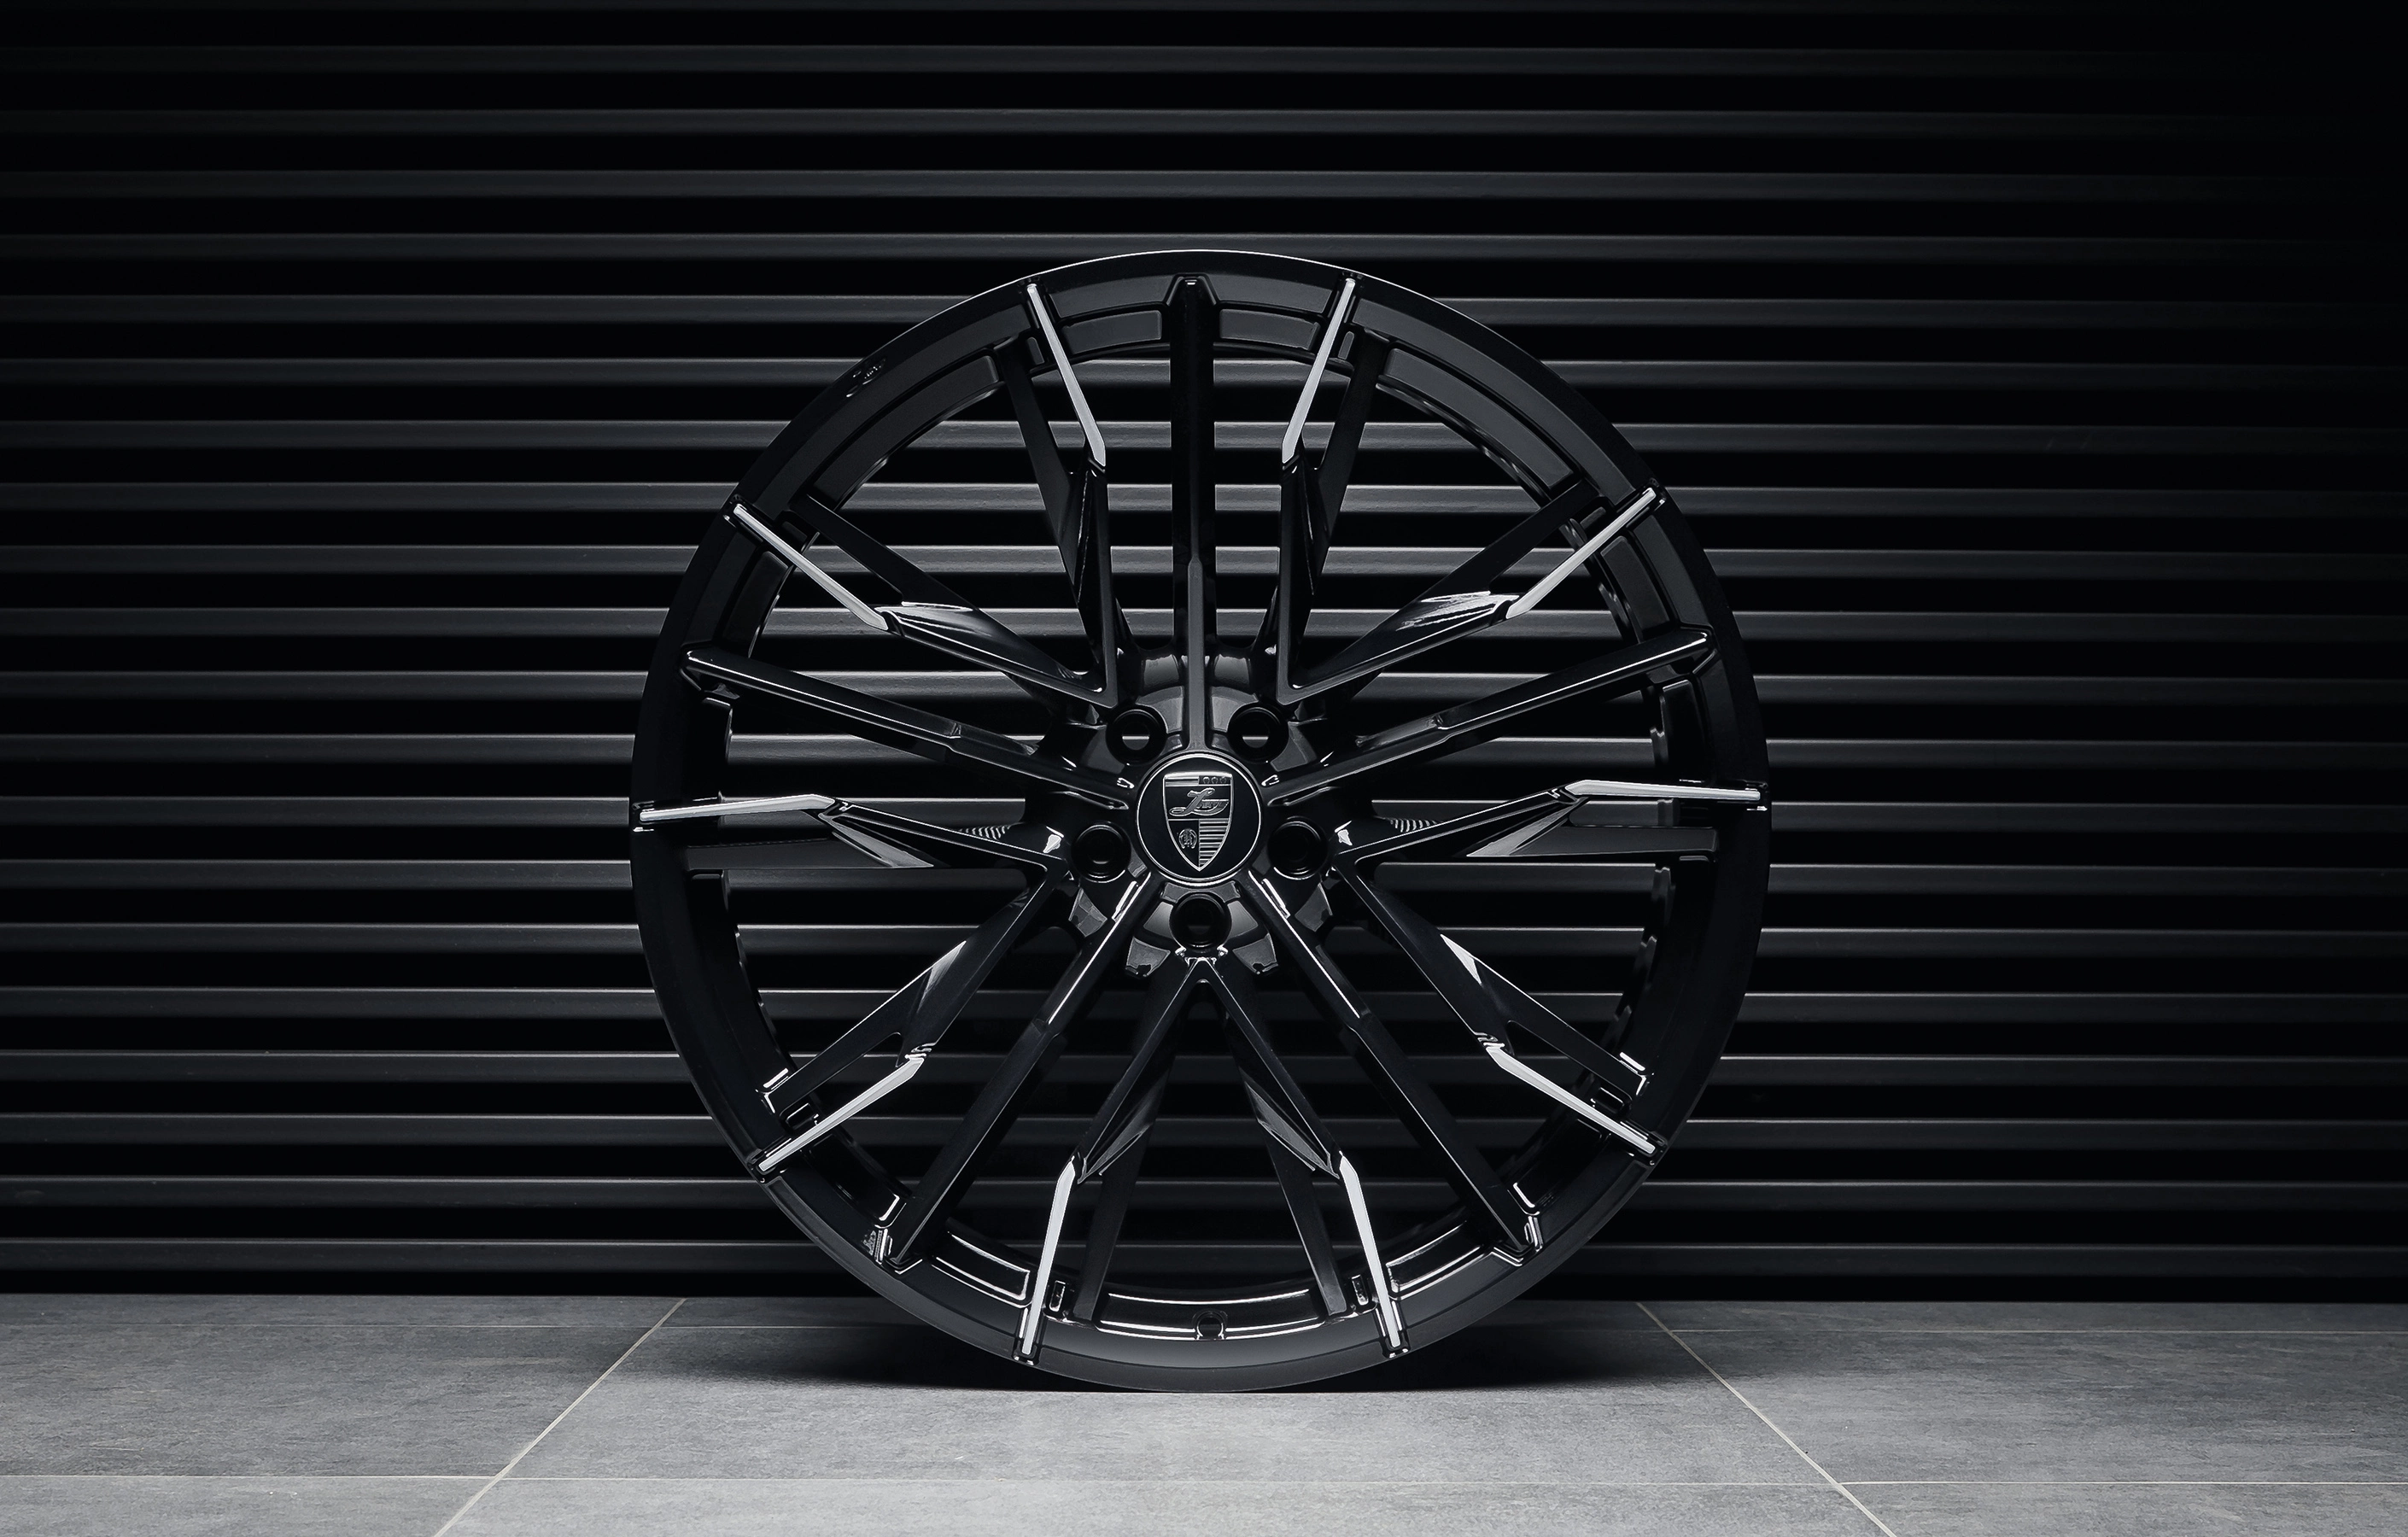 Installation custom forged wheels for bmw x6 22 inch